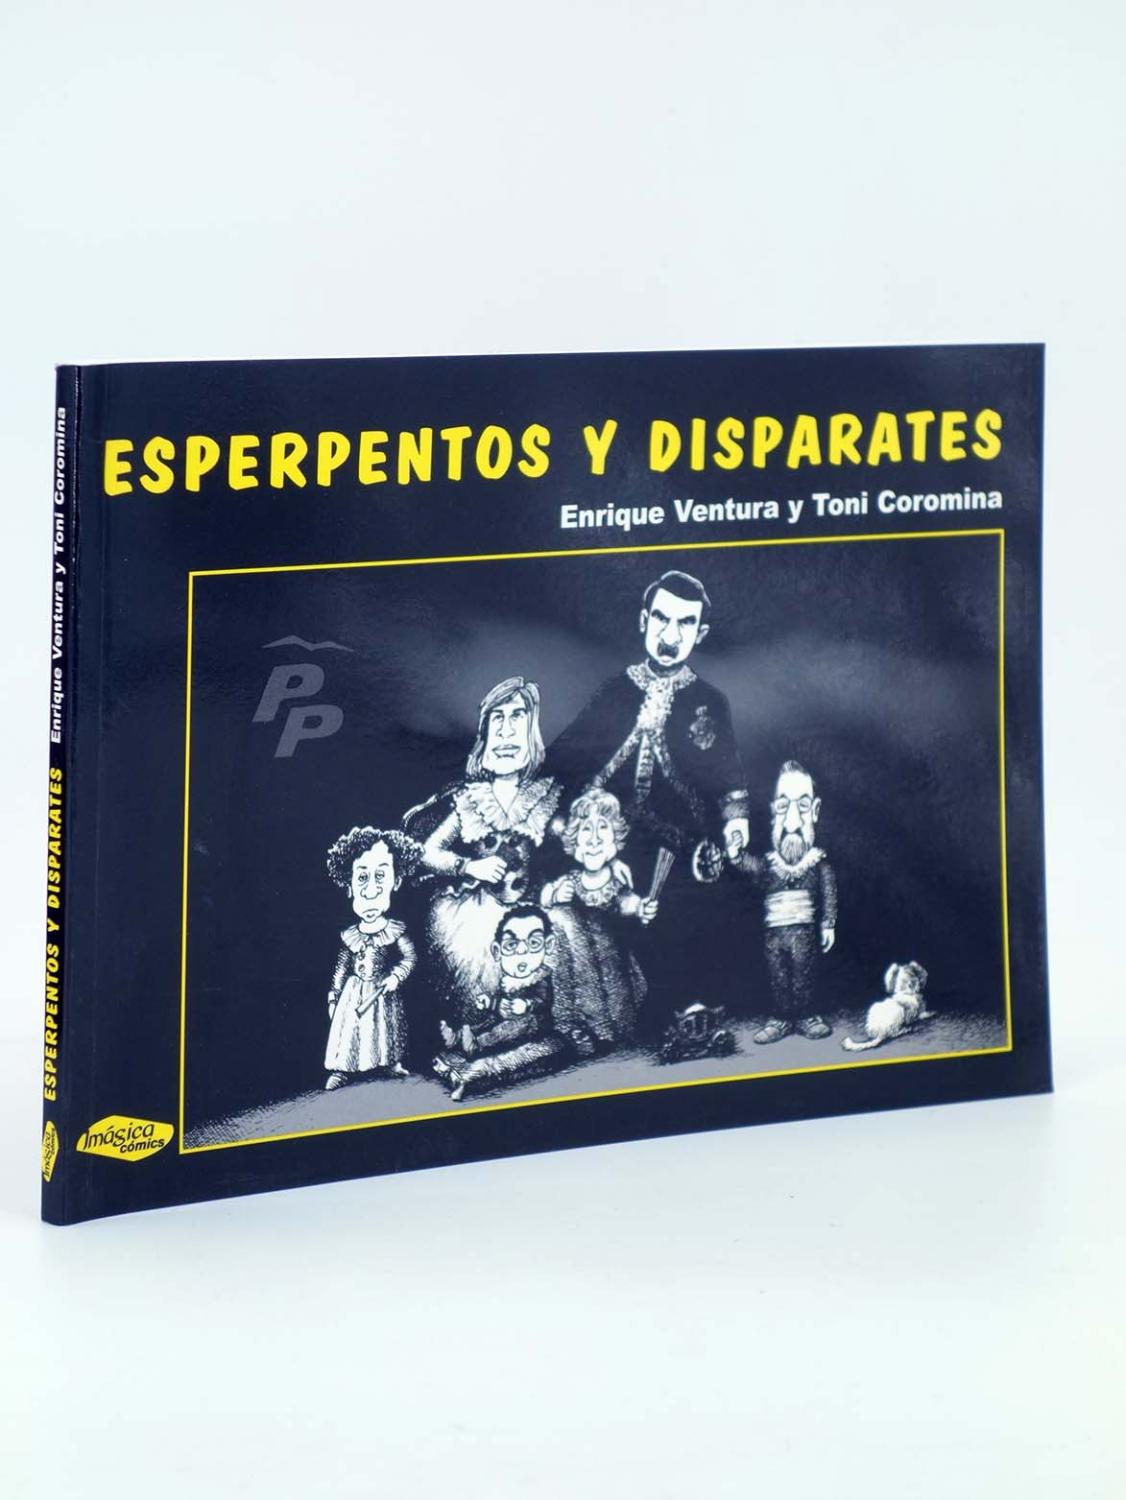 ESPERPENTOS Y DISPARATES (Enrique Ventura / Toni Coromina) Imágica, 2004. OFRT antes 9E - Enrique Ventura / Toni Coromina